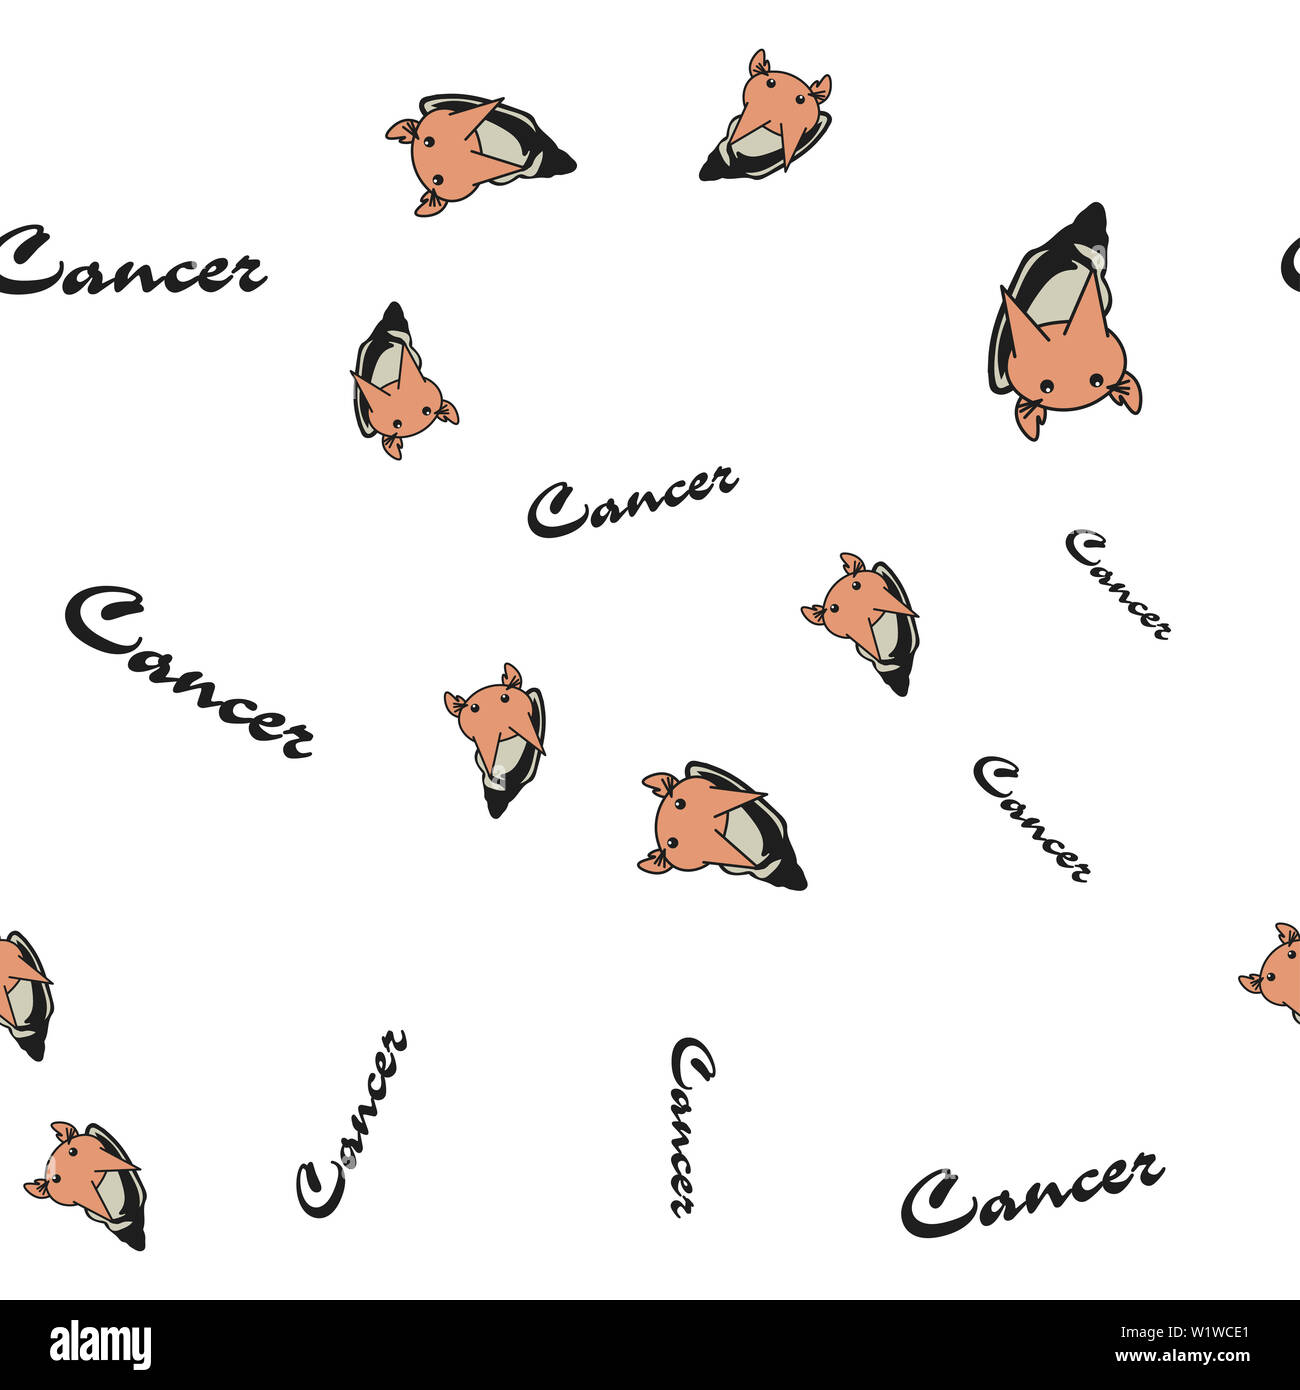 Motif de lapins caricature transparente indiquant les signes du zodiaque cancer avec texte. illustration sur fond blanc. Banque D'Images